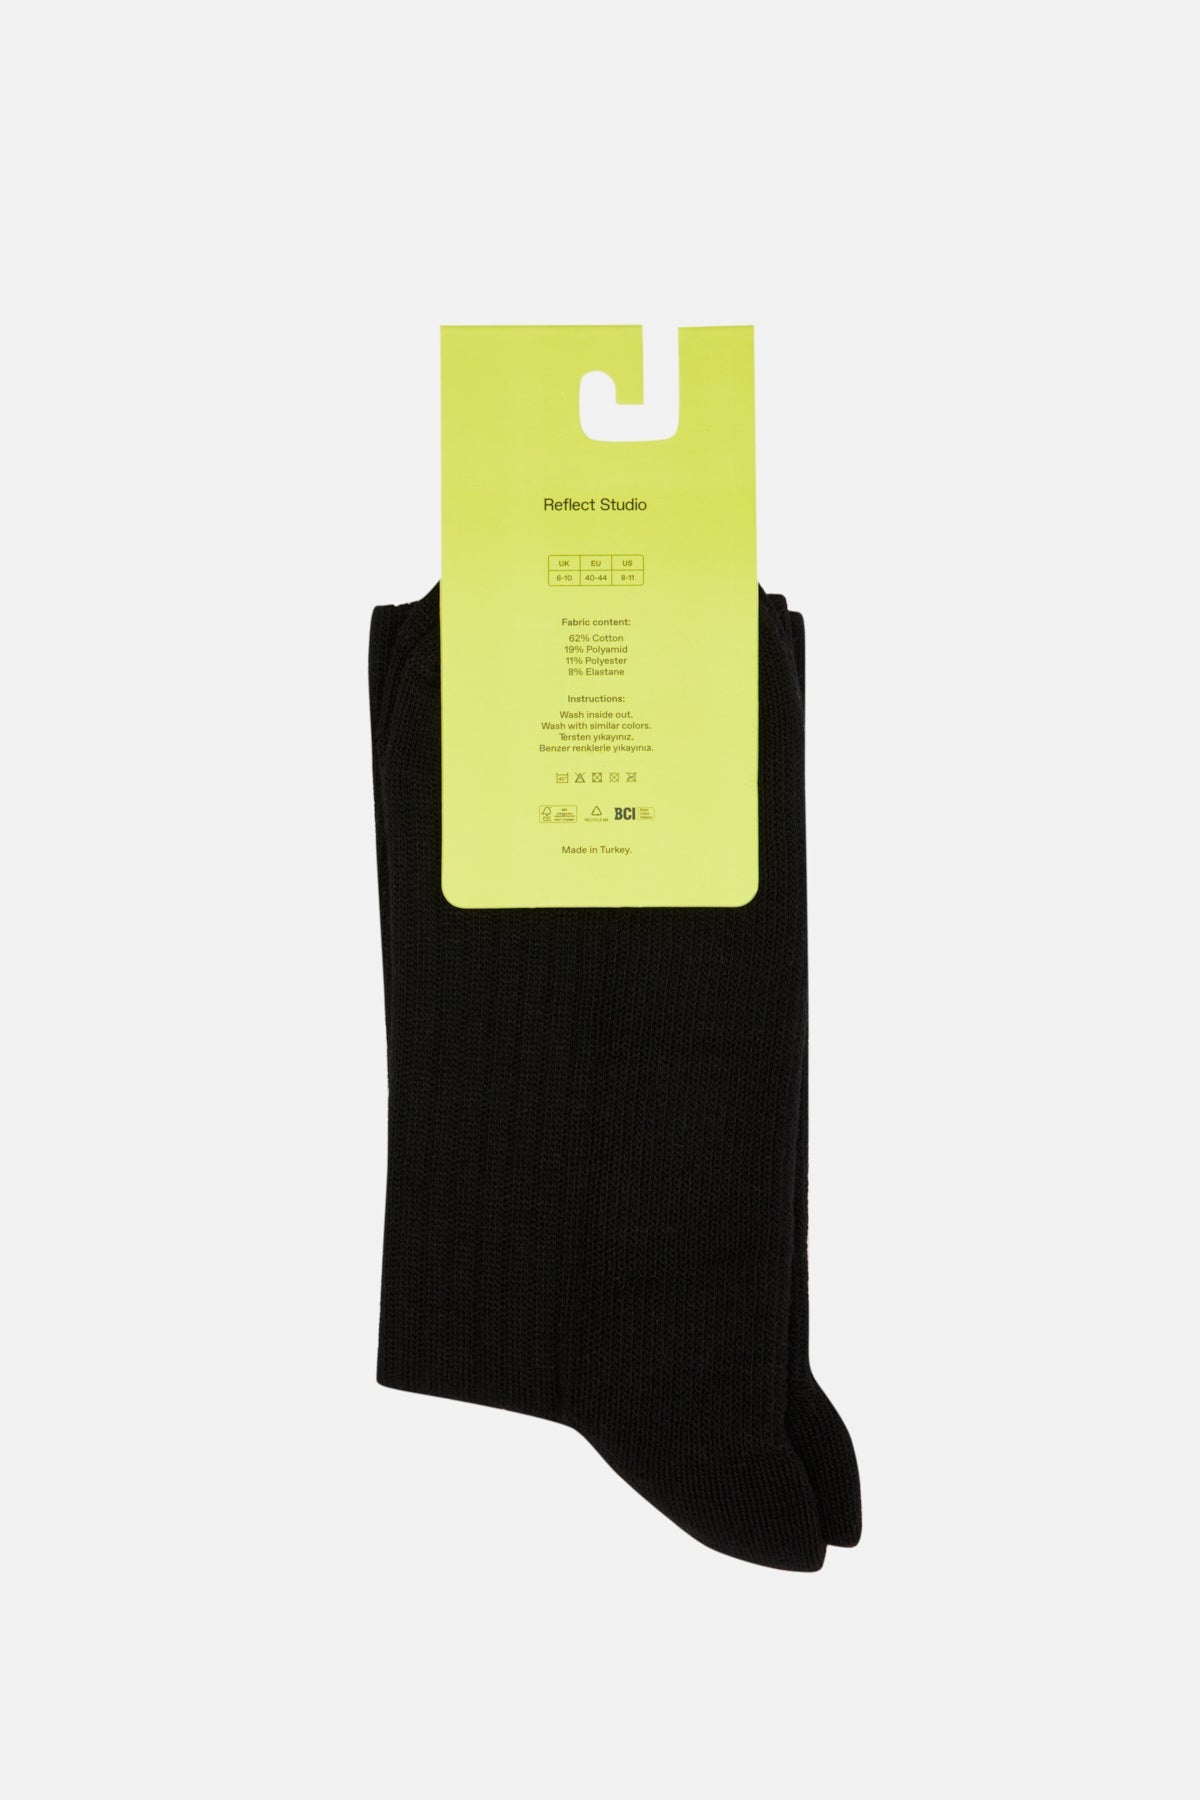 Panda Soket Havlu Çorap - Siyah